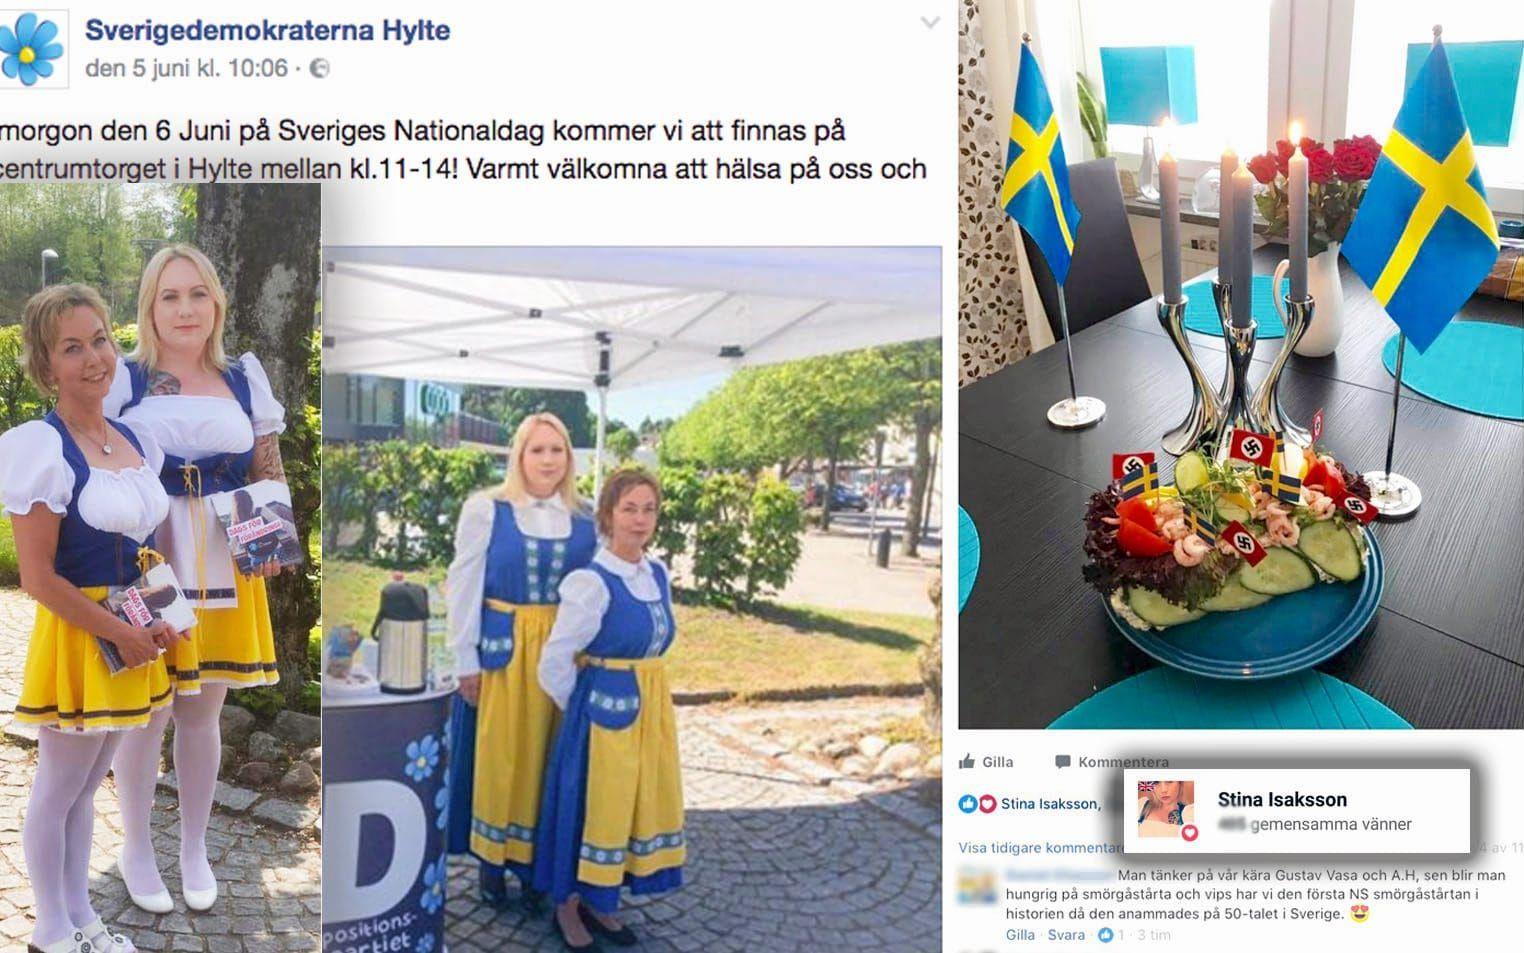 På Facebook har Sverigedemokraterna i Hylte lagt ut bilder på hur kommunpolitikerna Stina Isaksson (den blonda som står bakom) och Monica Grönroos firar nationaldagen. Stina Isaksson har även varit inne och gillat ett inlägg där en nazist gjort en smörgåstårta med hakkors på flaggorna.